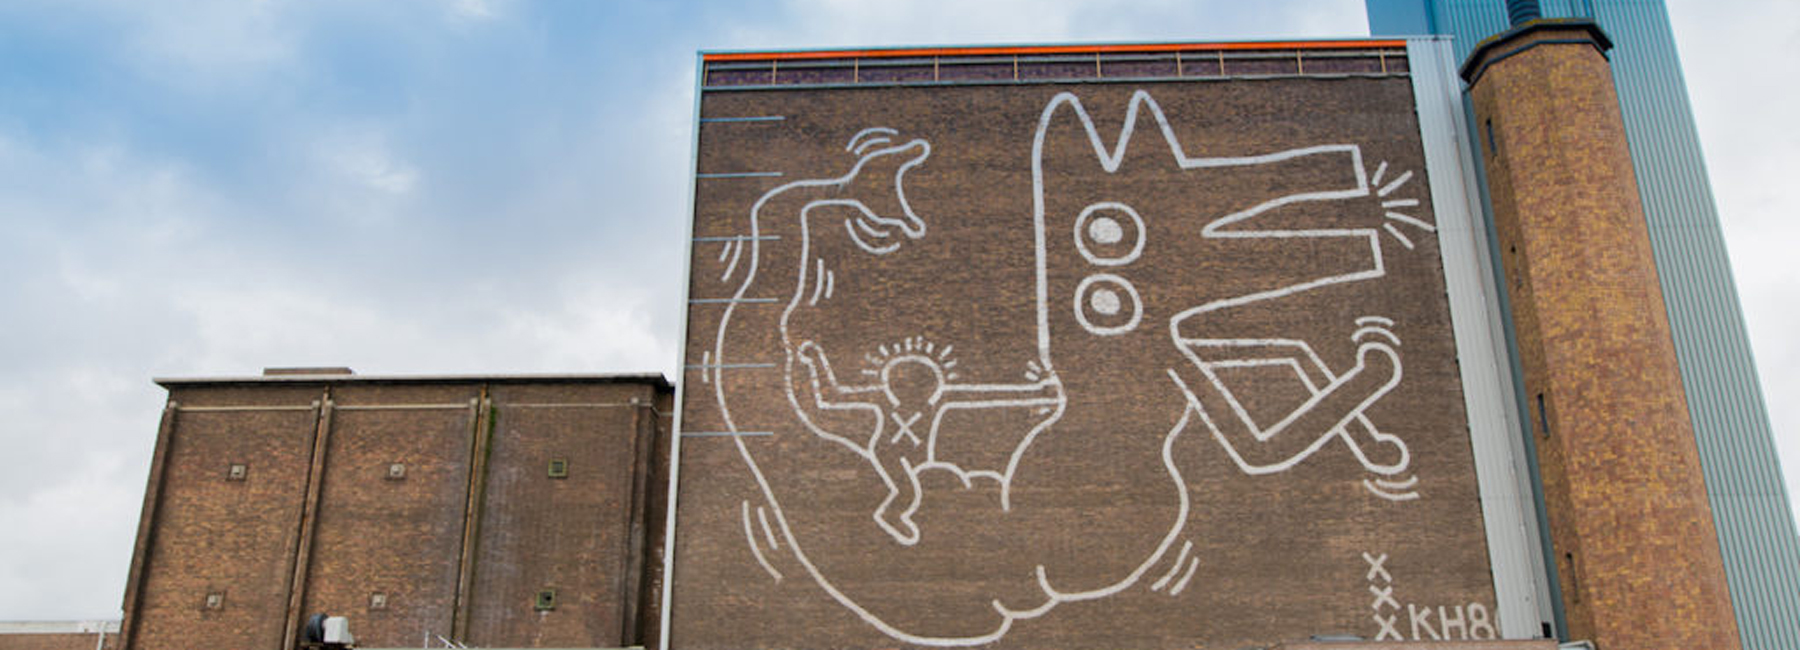 Keith Haring ismét napfényt kapott